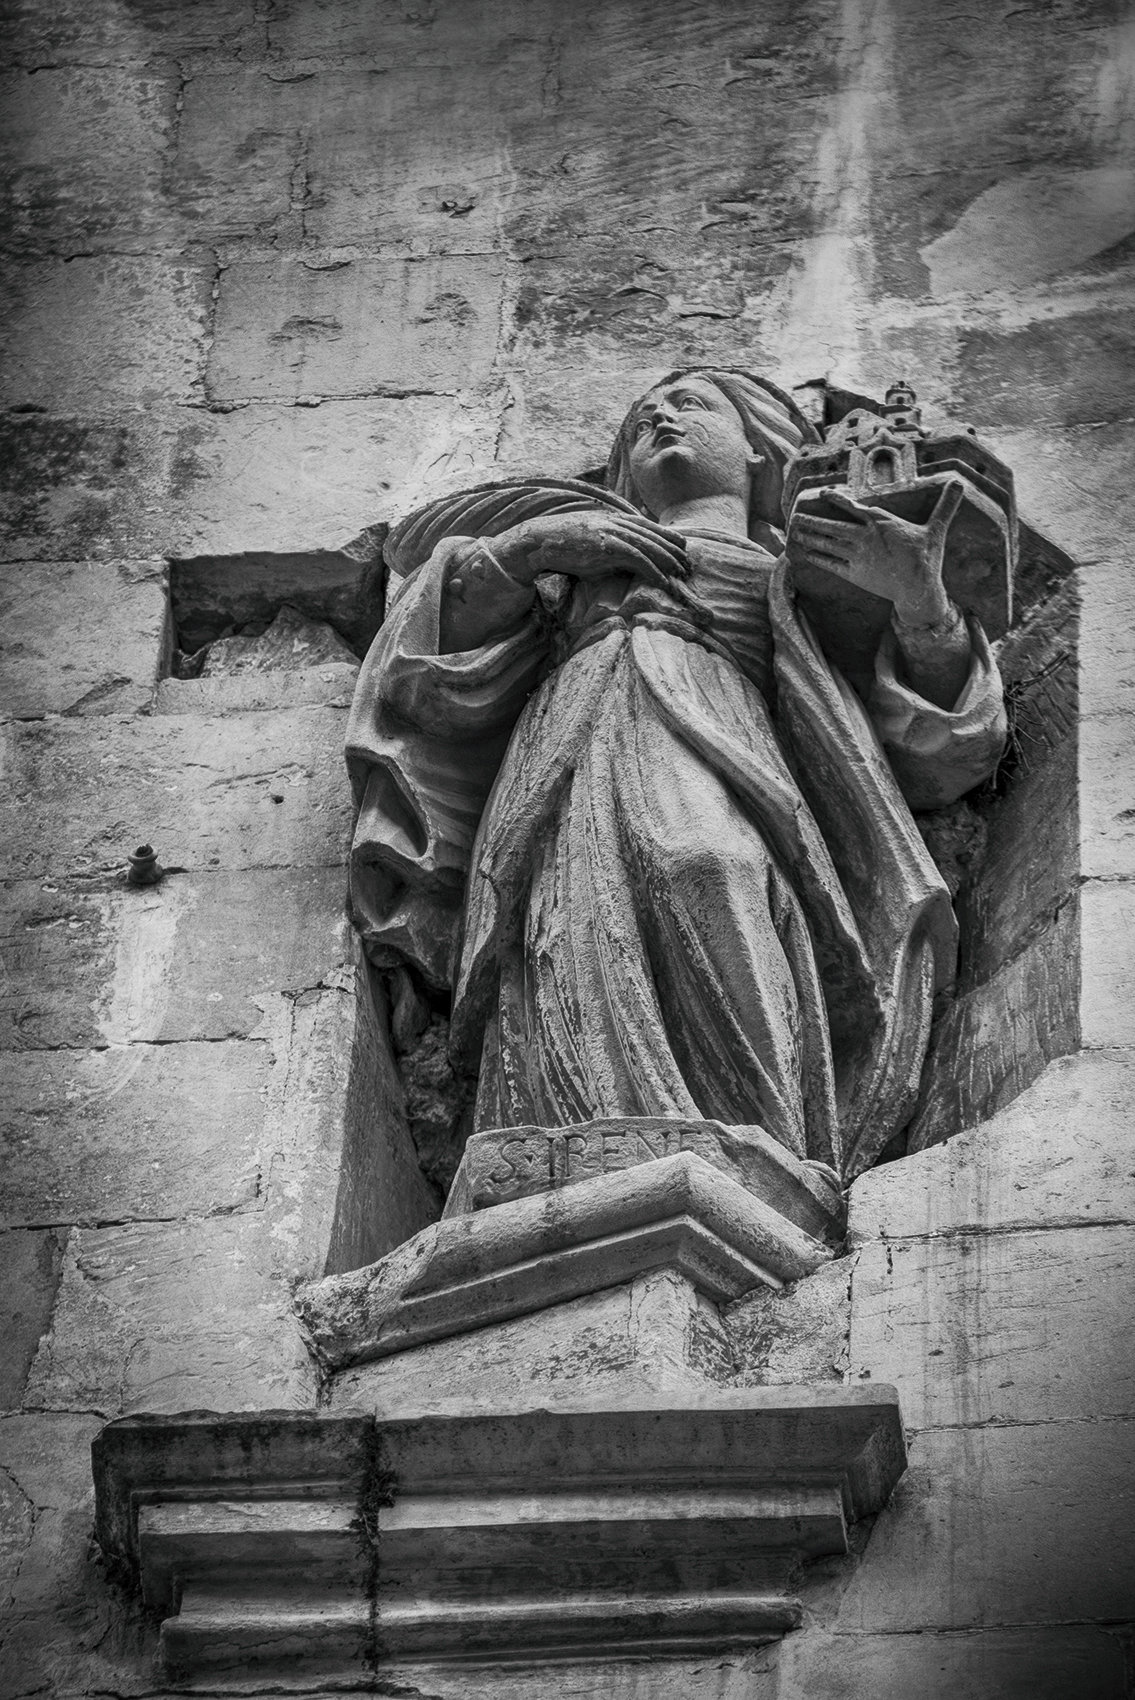 Lala_Amleto_S.Irene_statua situata in_alto_sul_muro_prima_del_Duomo_di_Lecce